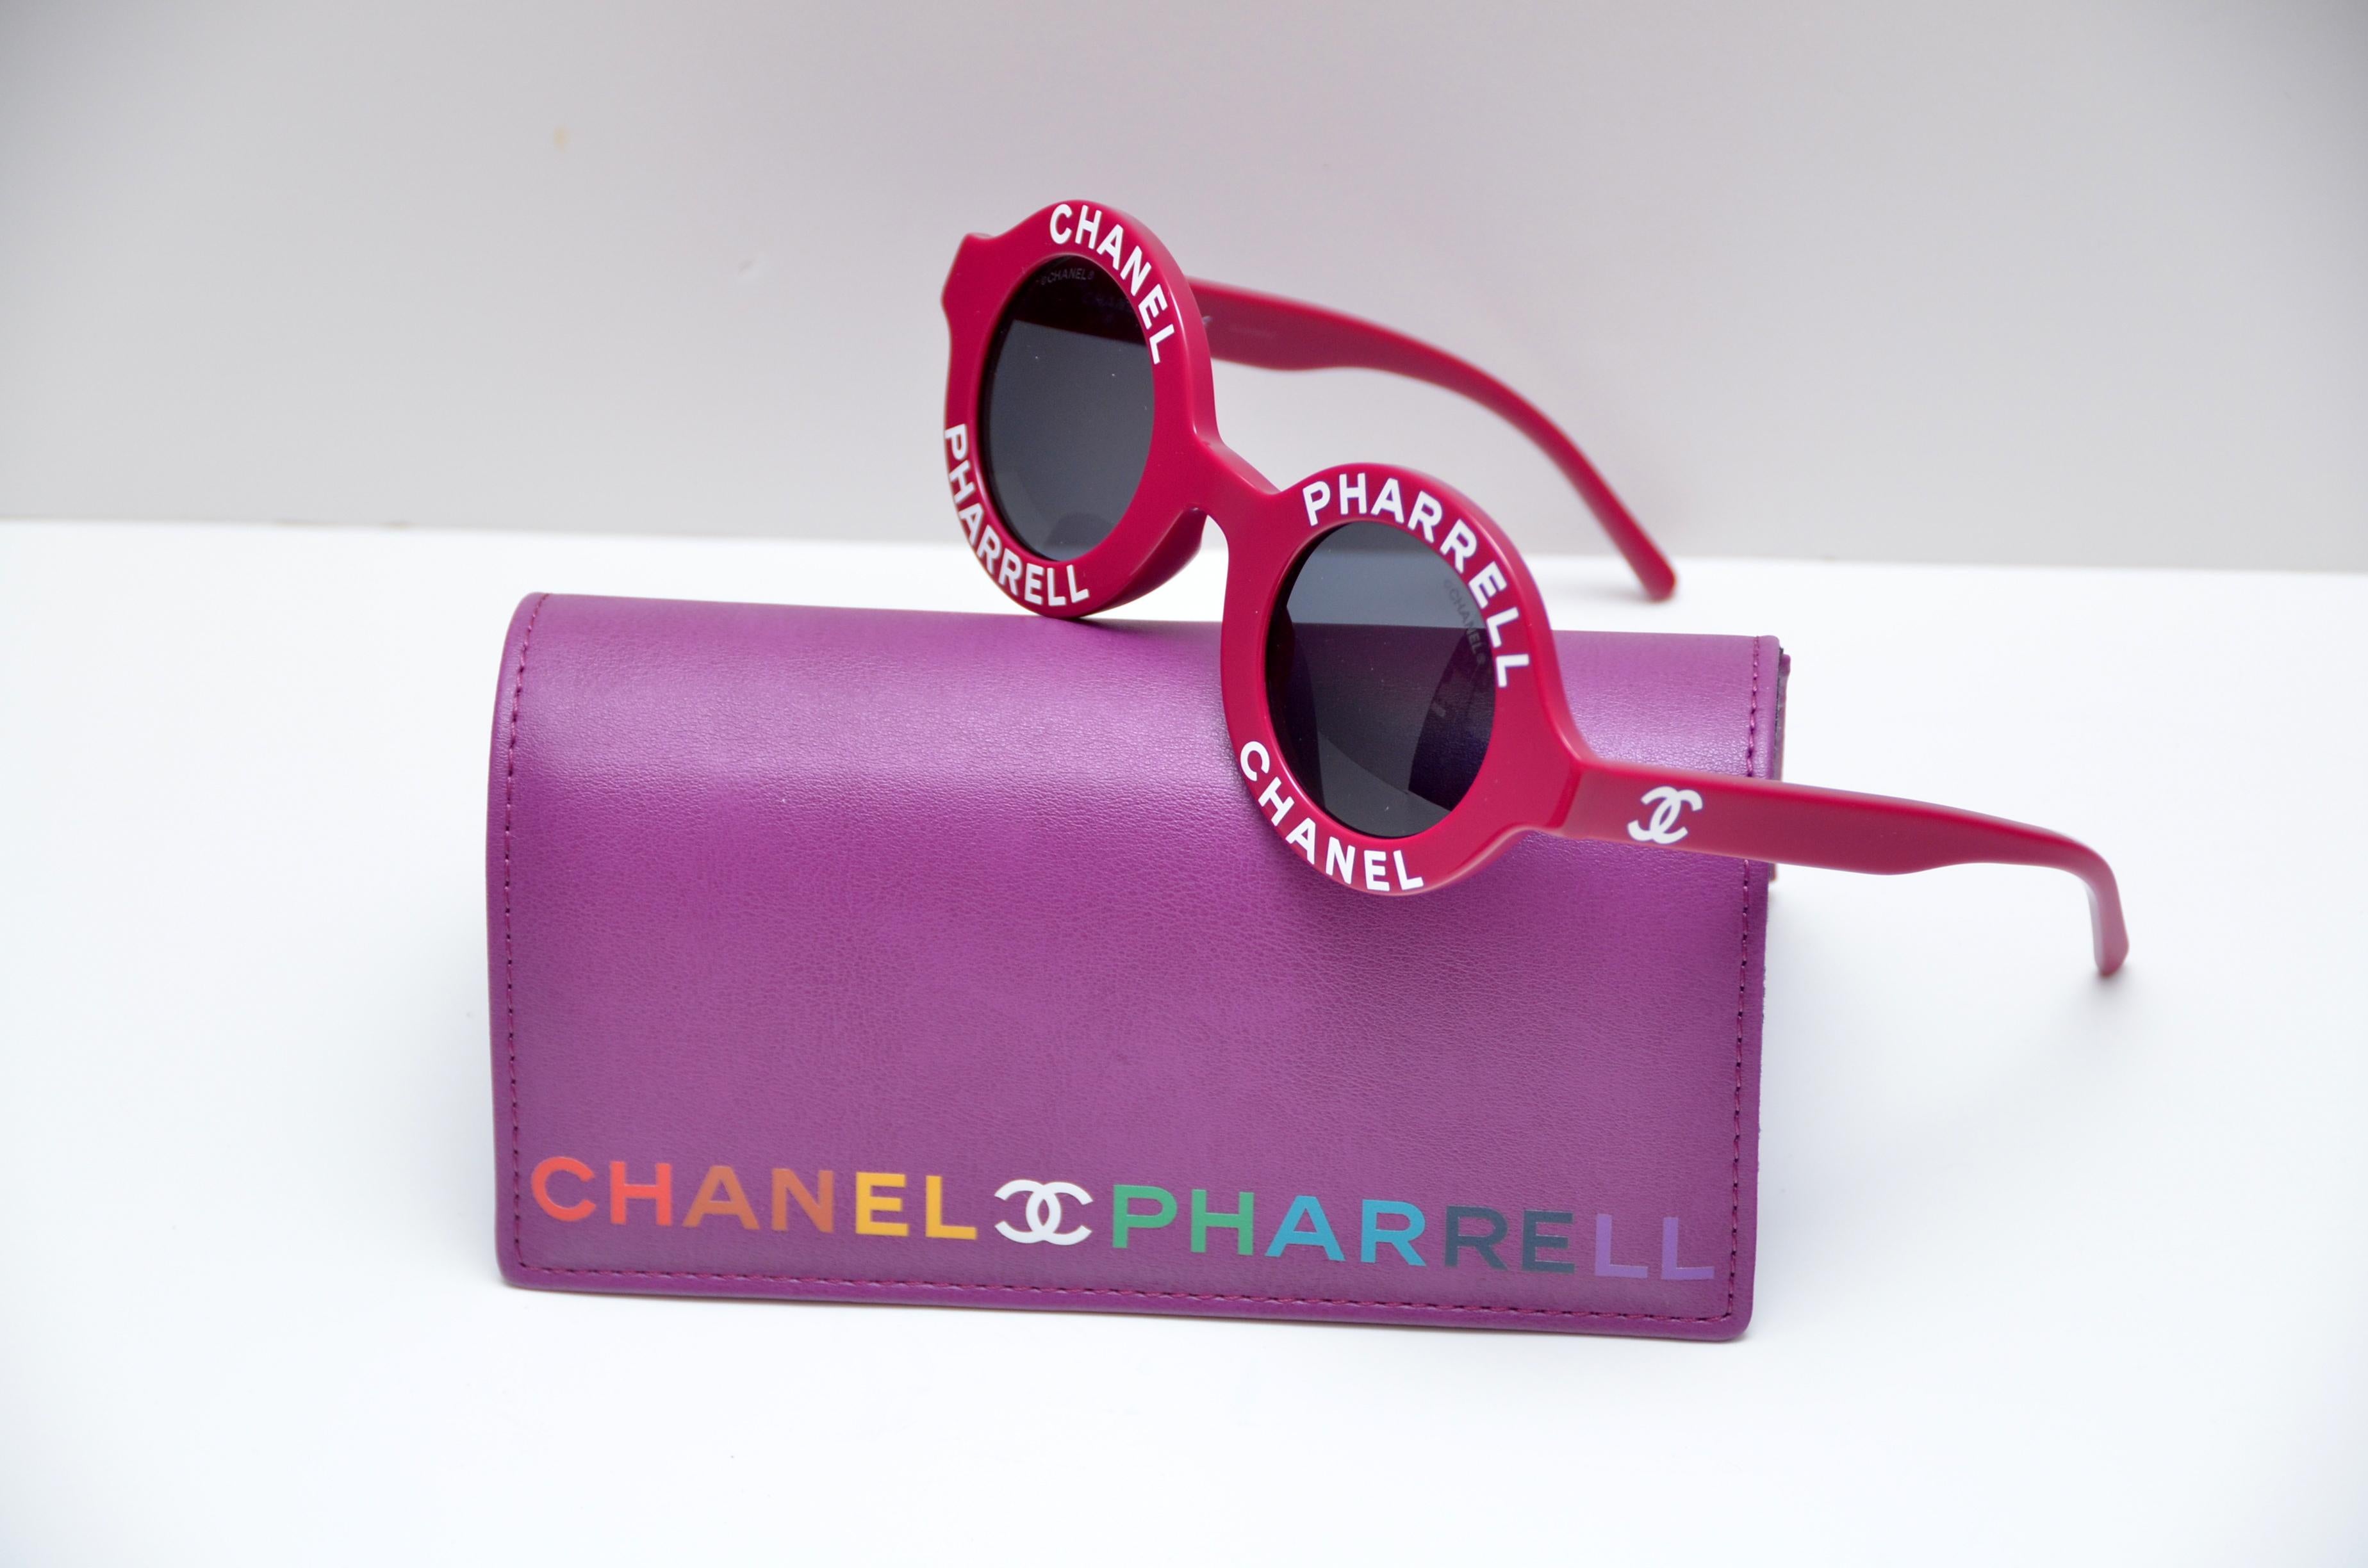 100% garantiert authentische Chanel x Pharrell Capsule Collection Sonnenbrille.  
Eine urbane Kapselkollektion:: die die langjährige Beziehung von Pharrell Williams zum Haus Chanel hervorhebt und von Karl Lagerfeld initiiert wurde.  
Farbe : Violett